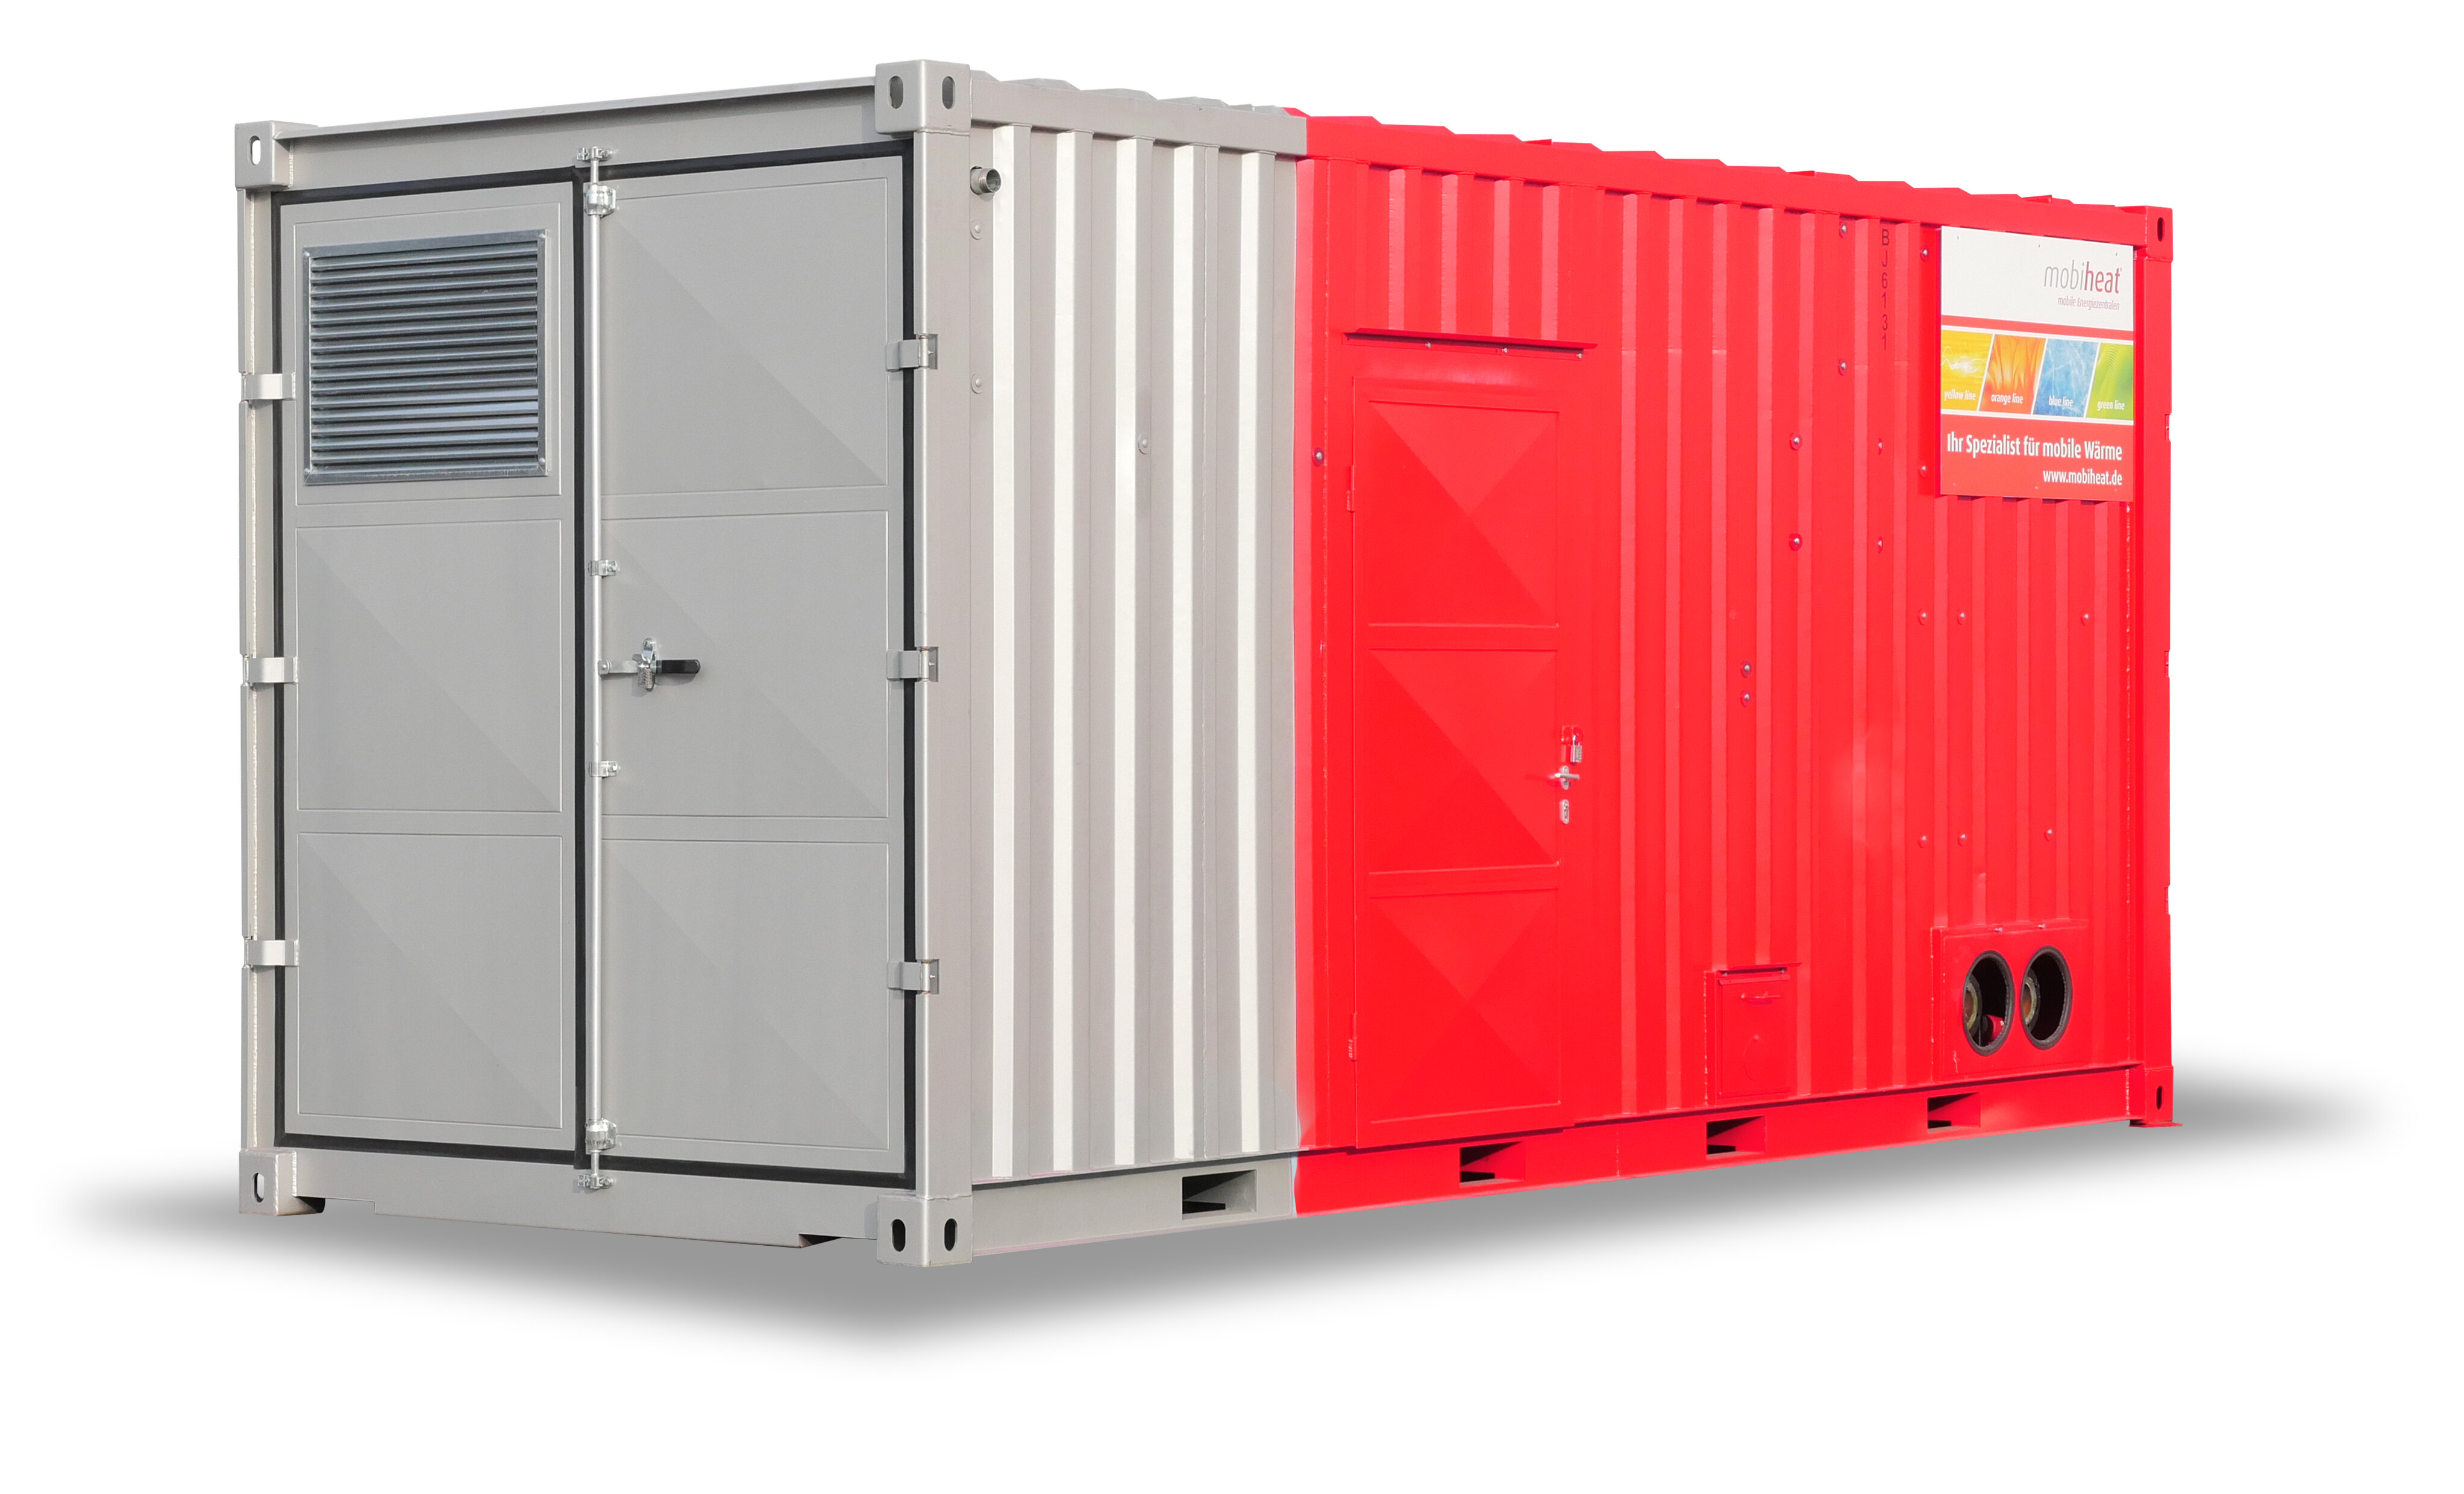 Rote Container Heizzentrale von mobiheat nebeneinander kaskadiert | © mobiheat GmbH